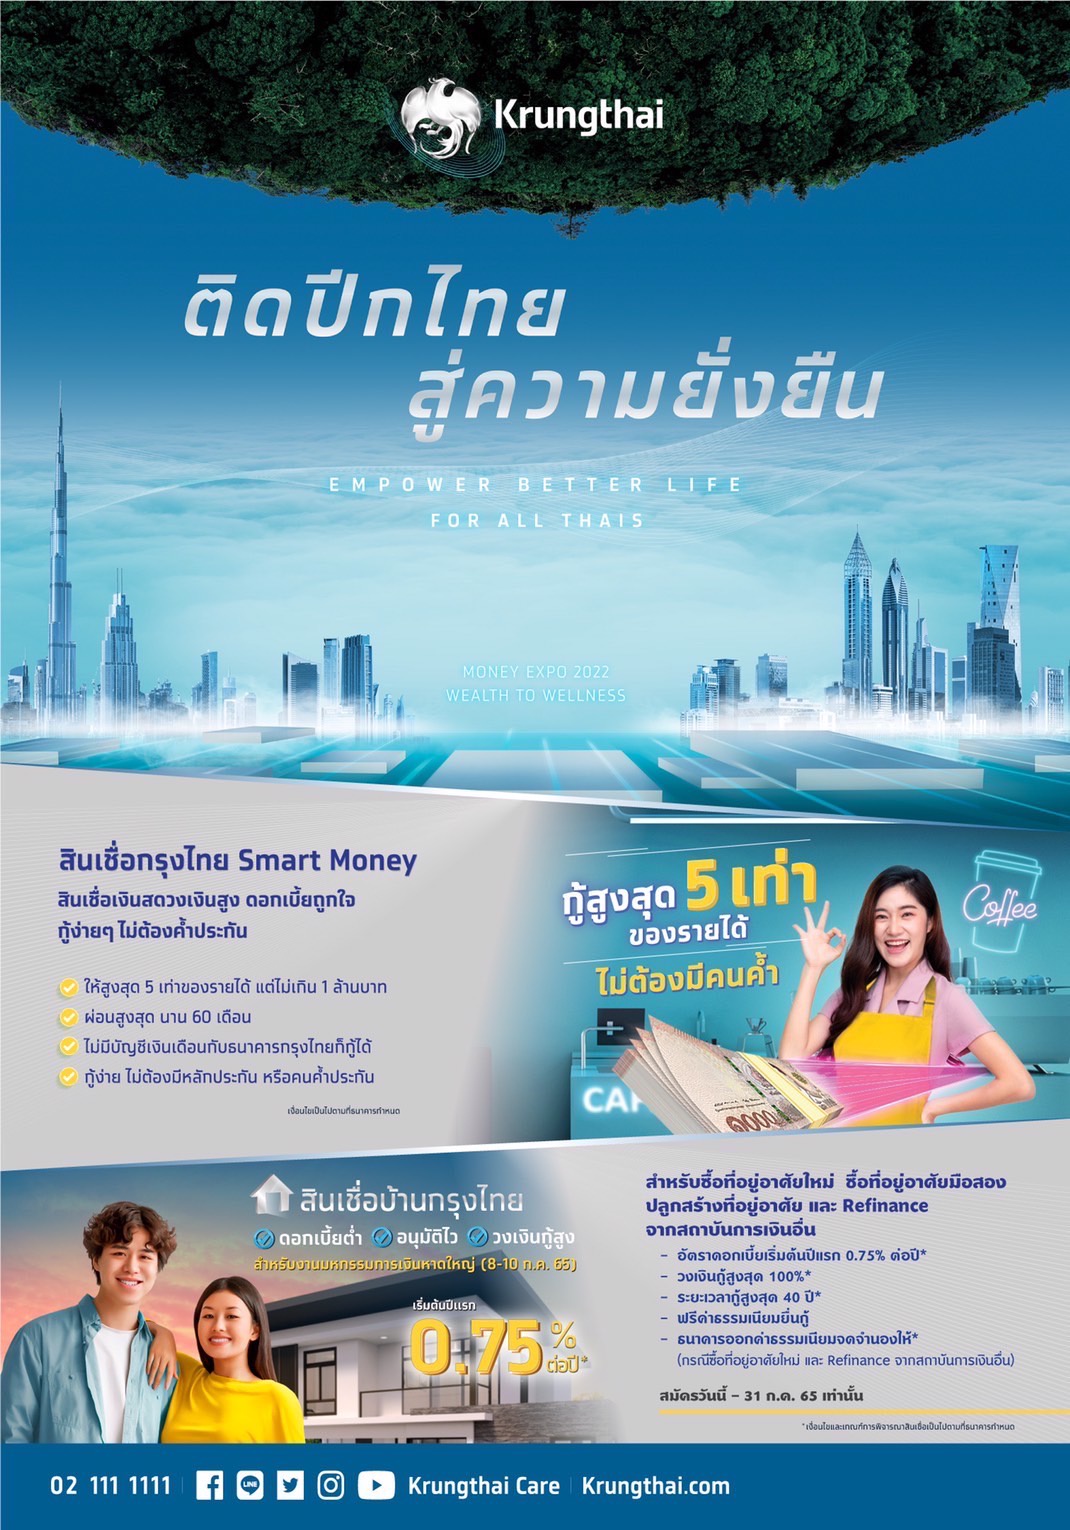 รมช.มหาดไทย เยี่ยมชมบูธกรุงไทย ติดปีกไทยสู่ความยั่งยืน ในงาน MONEY EXPO หาดใหญ่ 2022